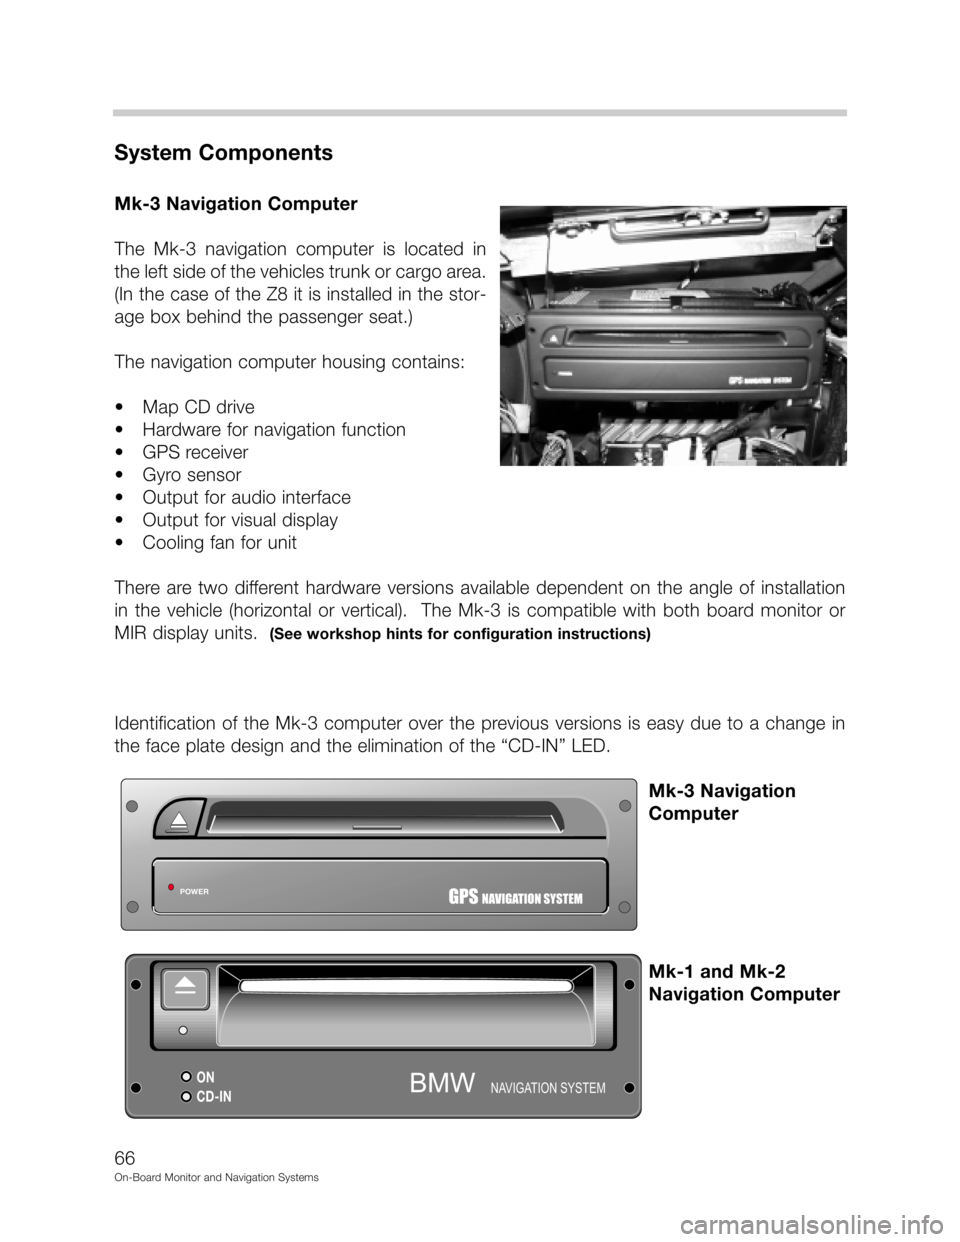 BMW 5 SERIES 2000 E39 On Board Monitor System Workshop Manual DD



"&
(	
-.2./!!
	0", 1" !2./
# 9. 
&
 	
   
&
9
70
